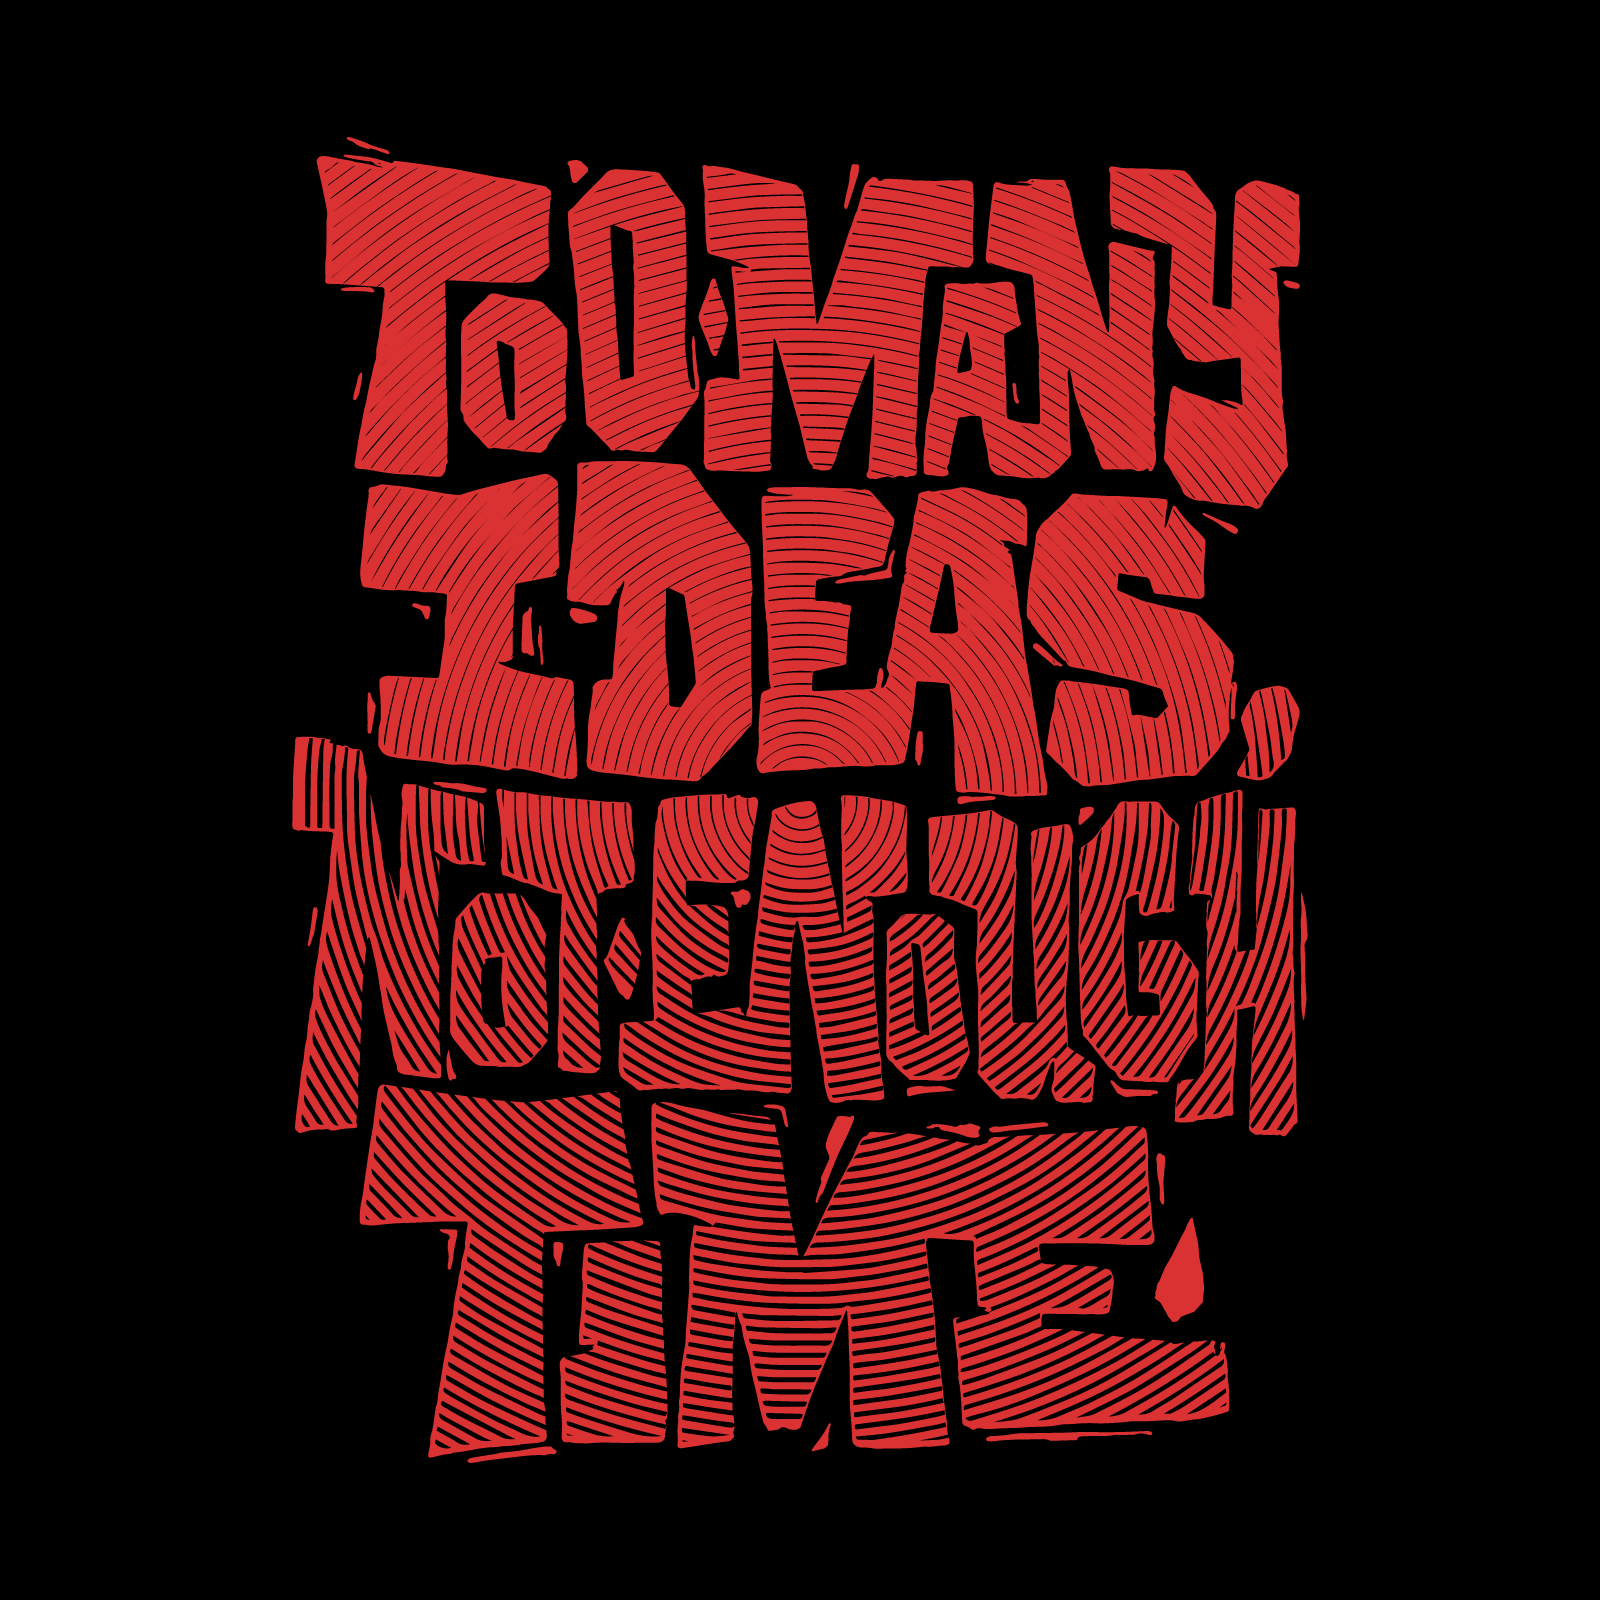 Too Many Ideas - Mat21